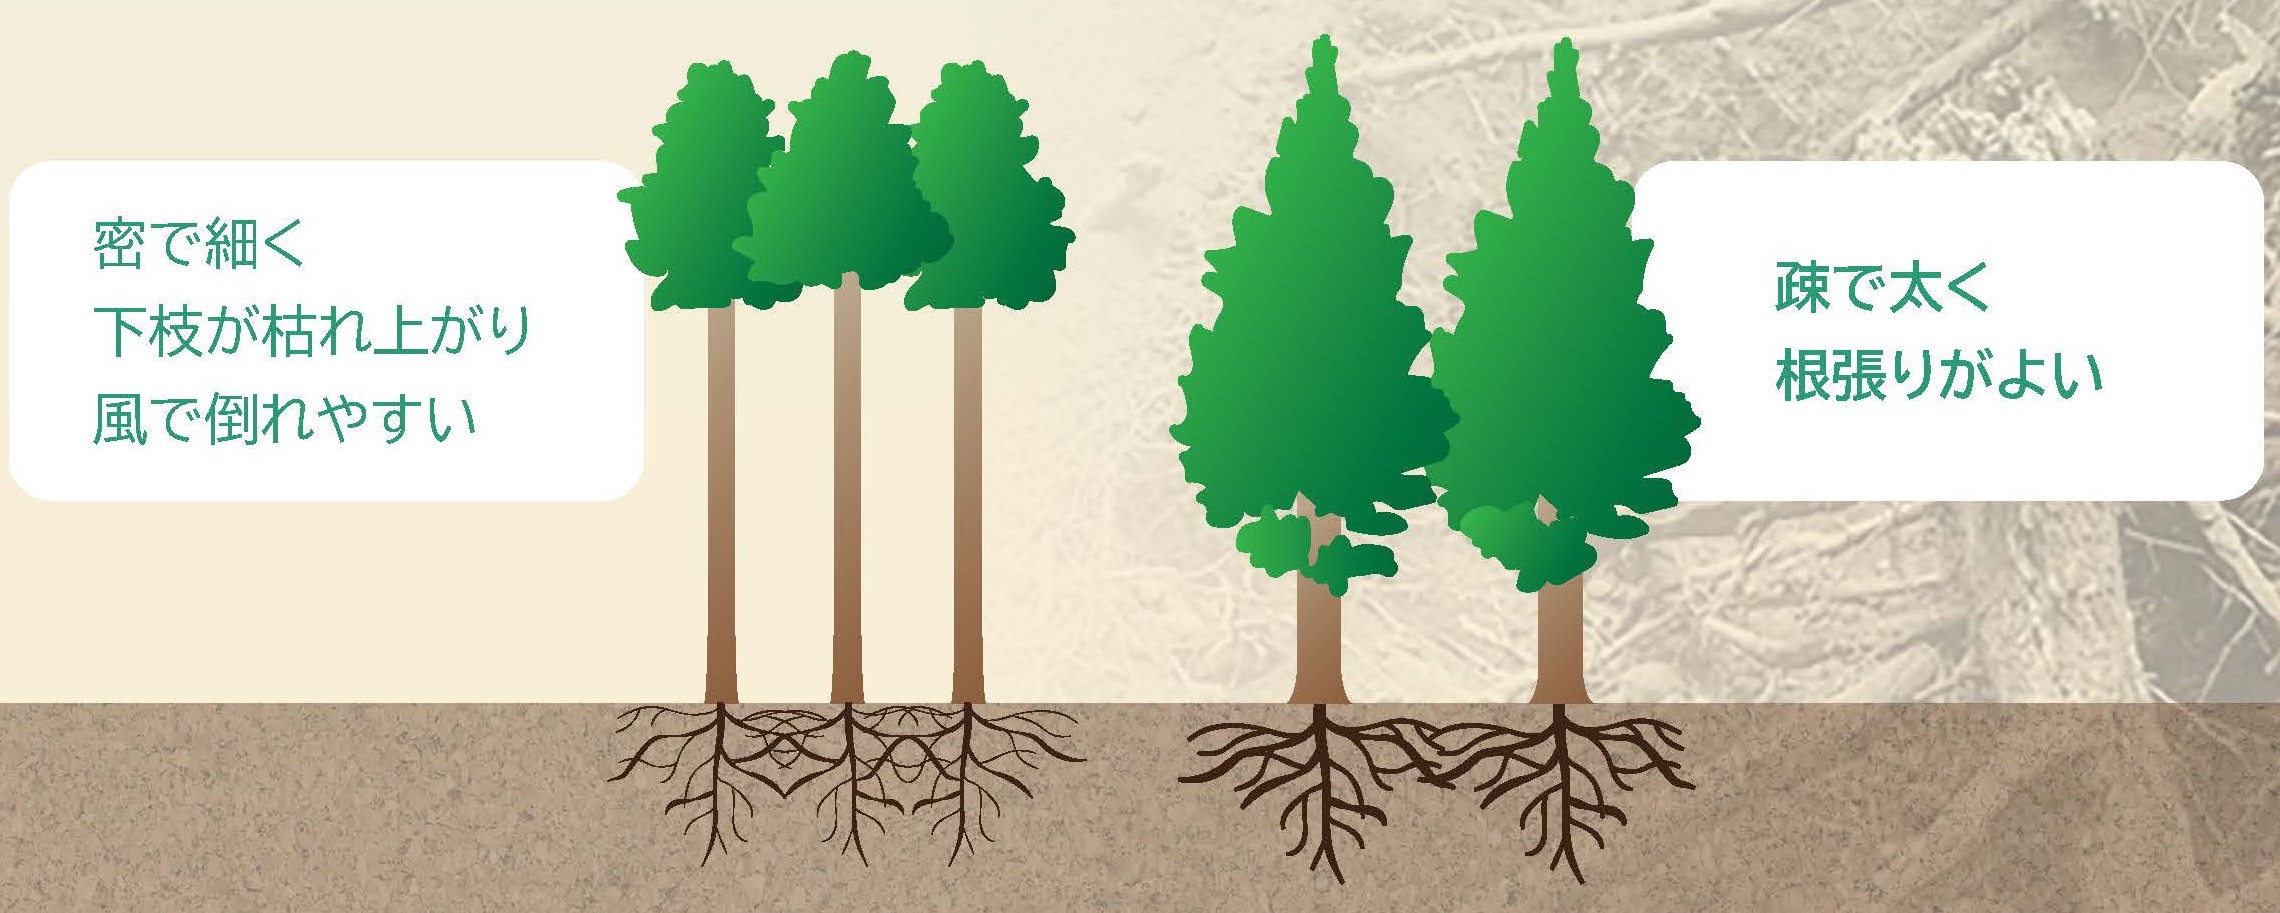 パンフレット「森林の根系が持つ表層崩壊防止機能」を公開しました